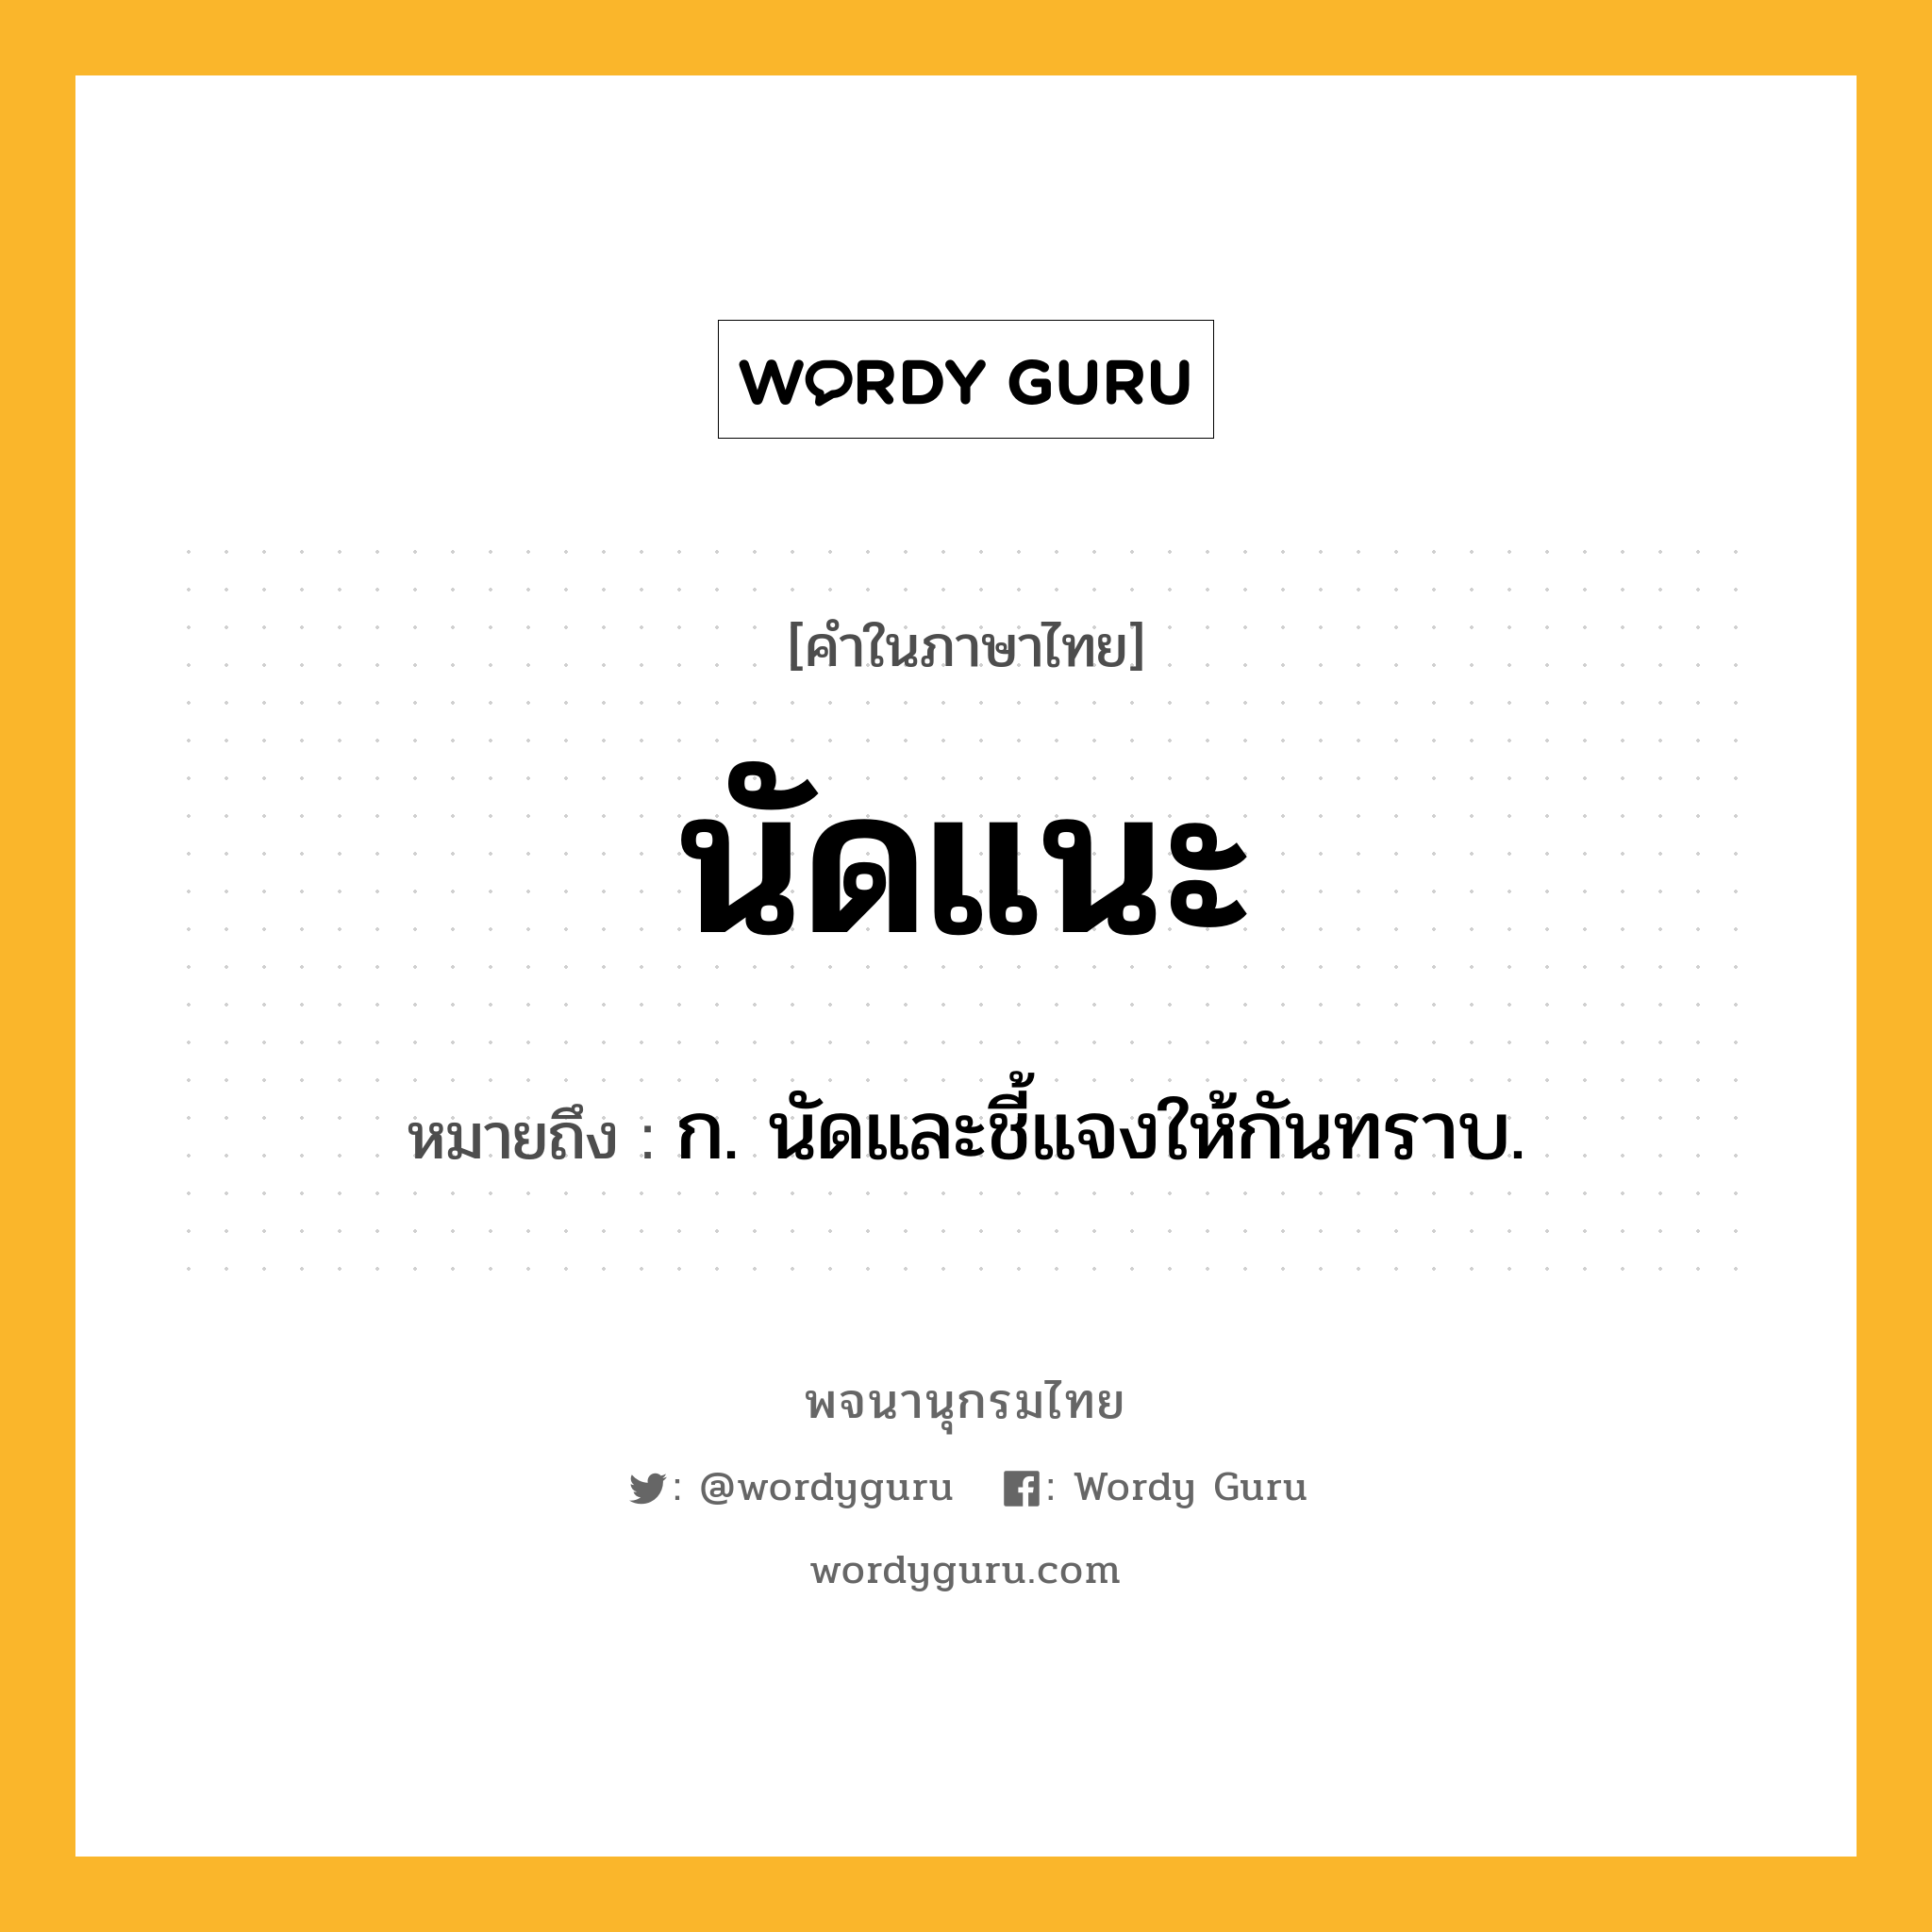 นัดแนะ ความหมาย หมายถึงอะไร?, คำในภาษาไทย นัดแนะ หมายถึง ก. นัดและชี้แจงให้กันทราบ.